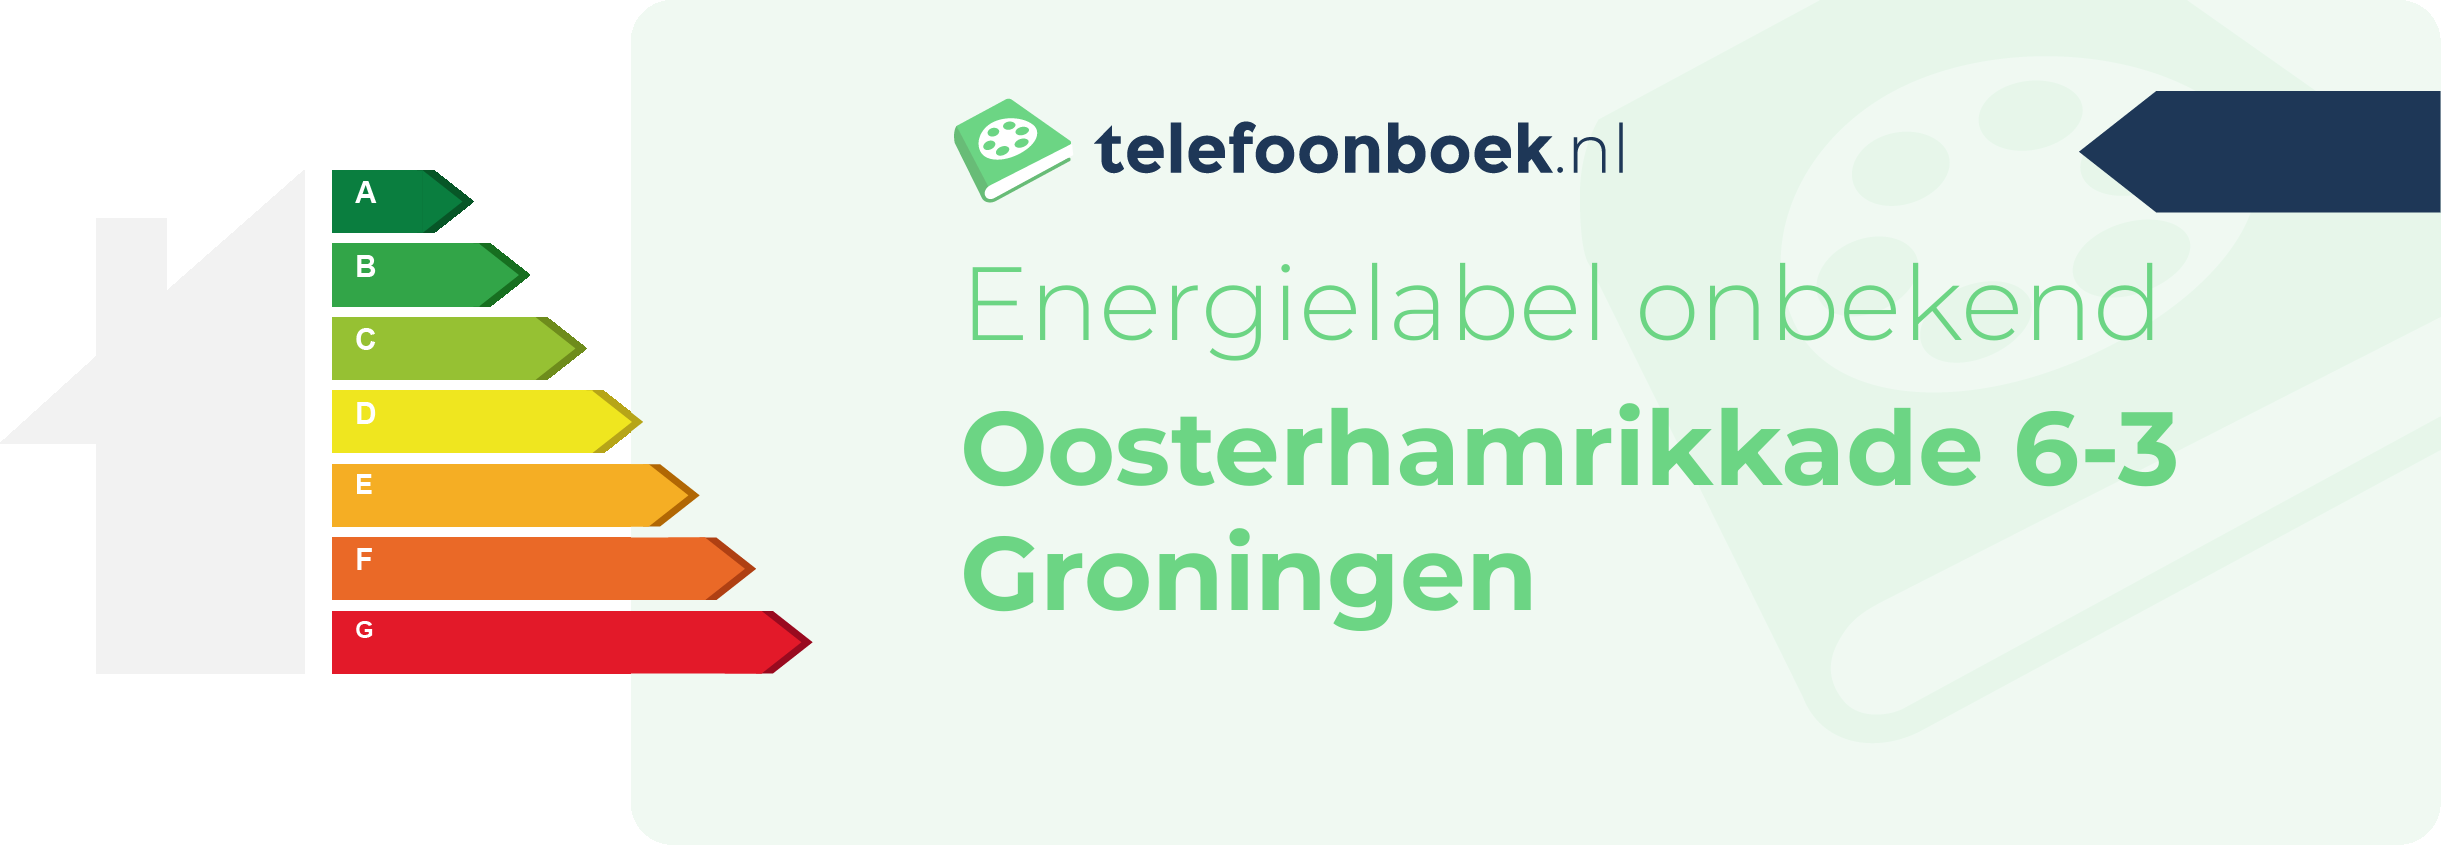 Energielabel Oosterhamrikkade 6-3 Groningen